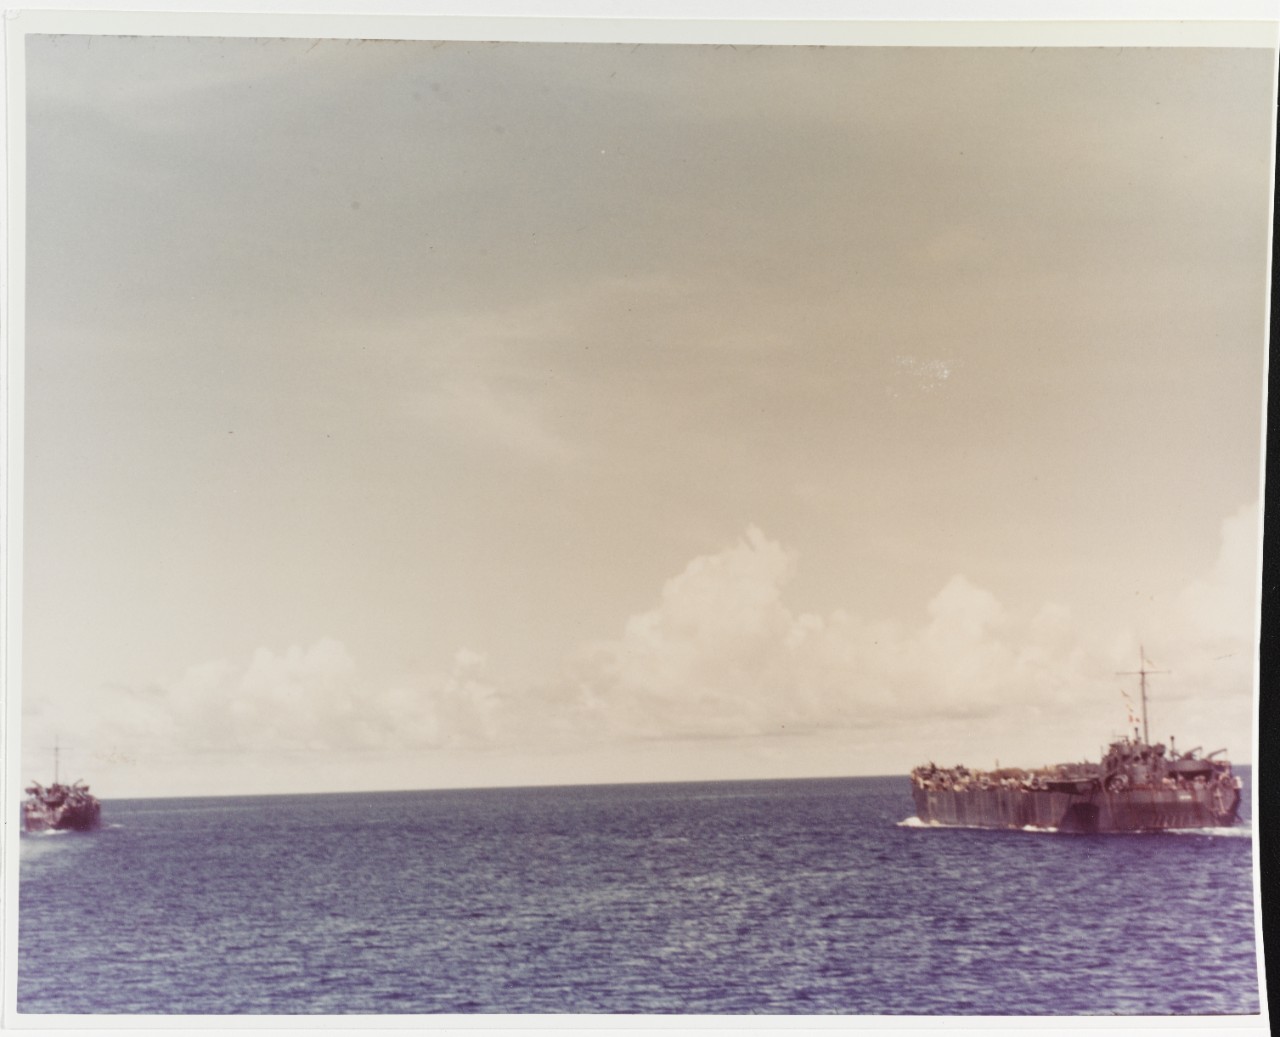 Bougainville Campaign, 1943-1944